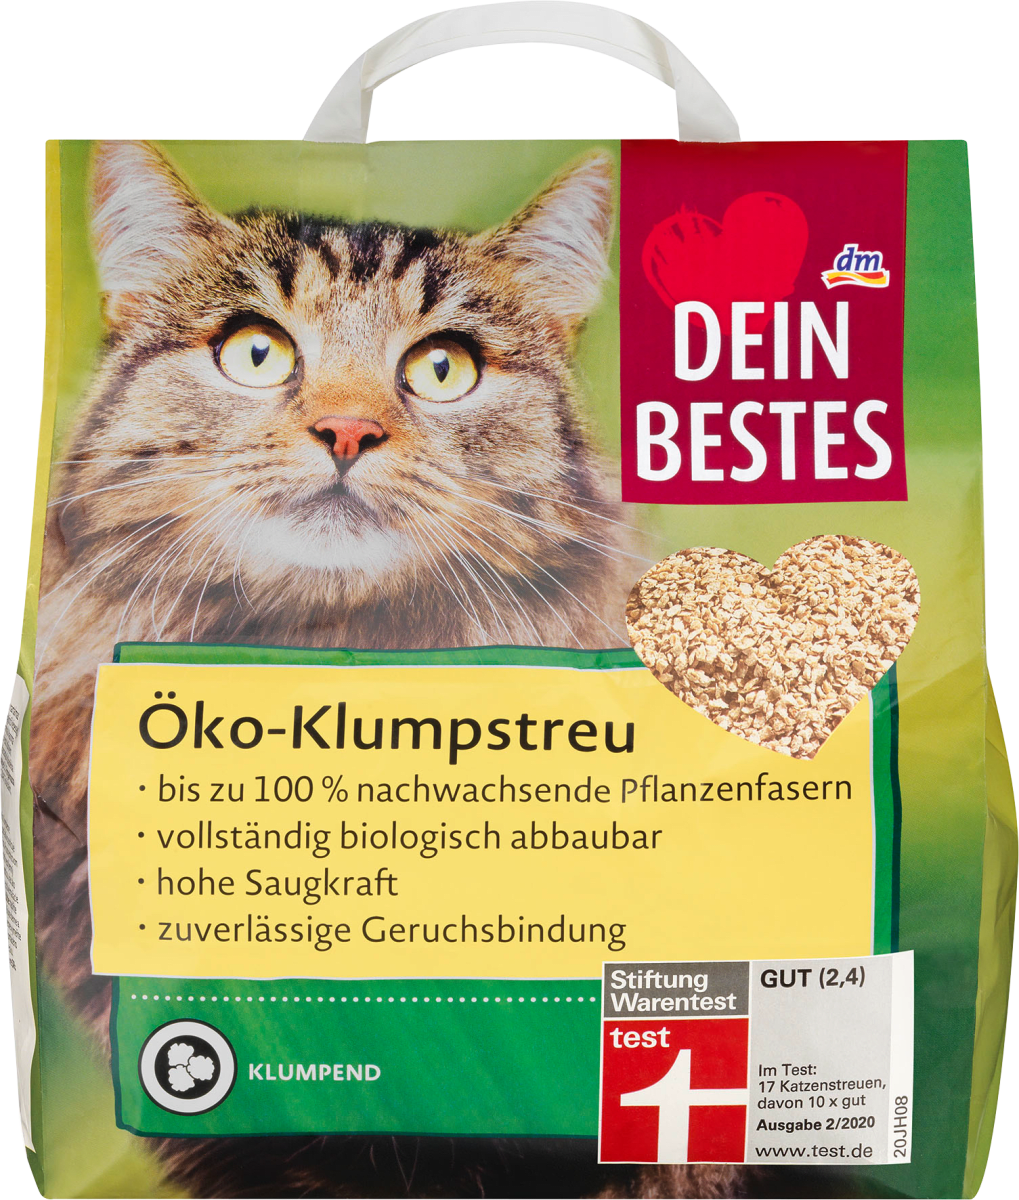 Dein Bestes Katzenstreu Oko Klumpstreu 10 L Dauerhaft Gunstig Online Kaufen Dm De